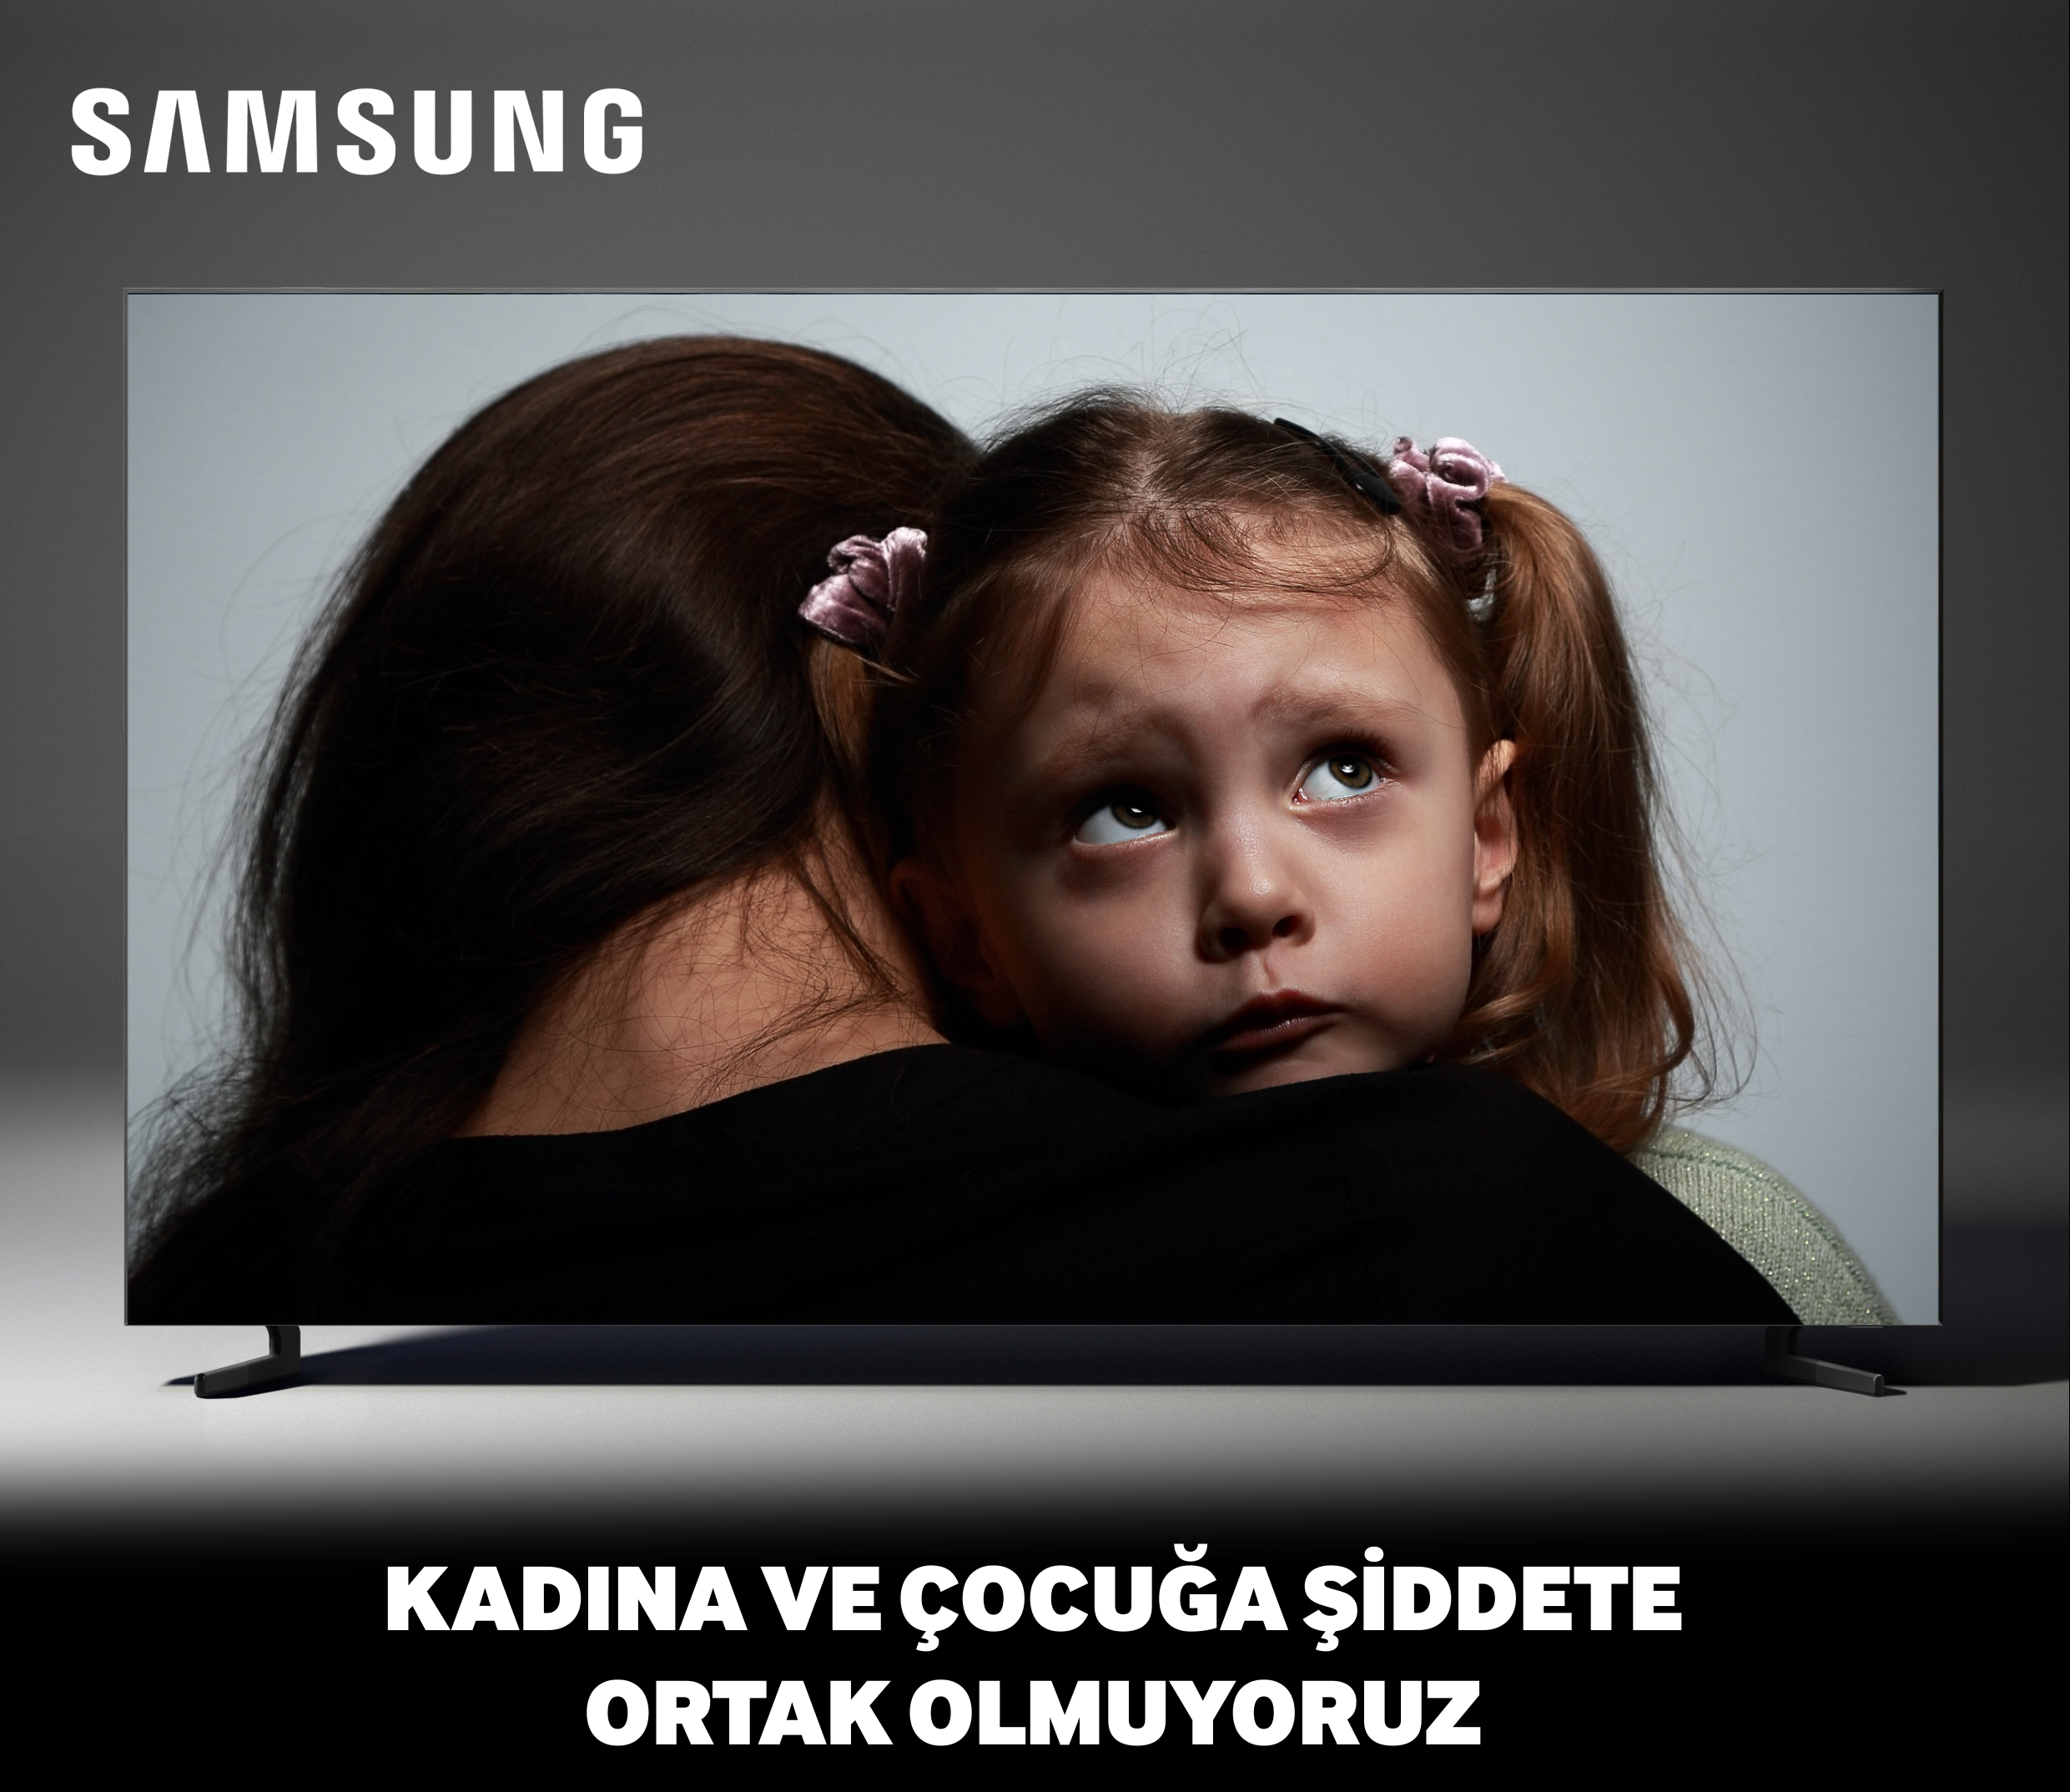 Samsung Electronics Türkiye kadına ve çocuğa şiddete tepkisini gösterdi-campaigntr